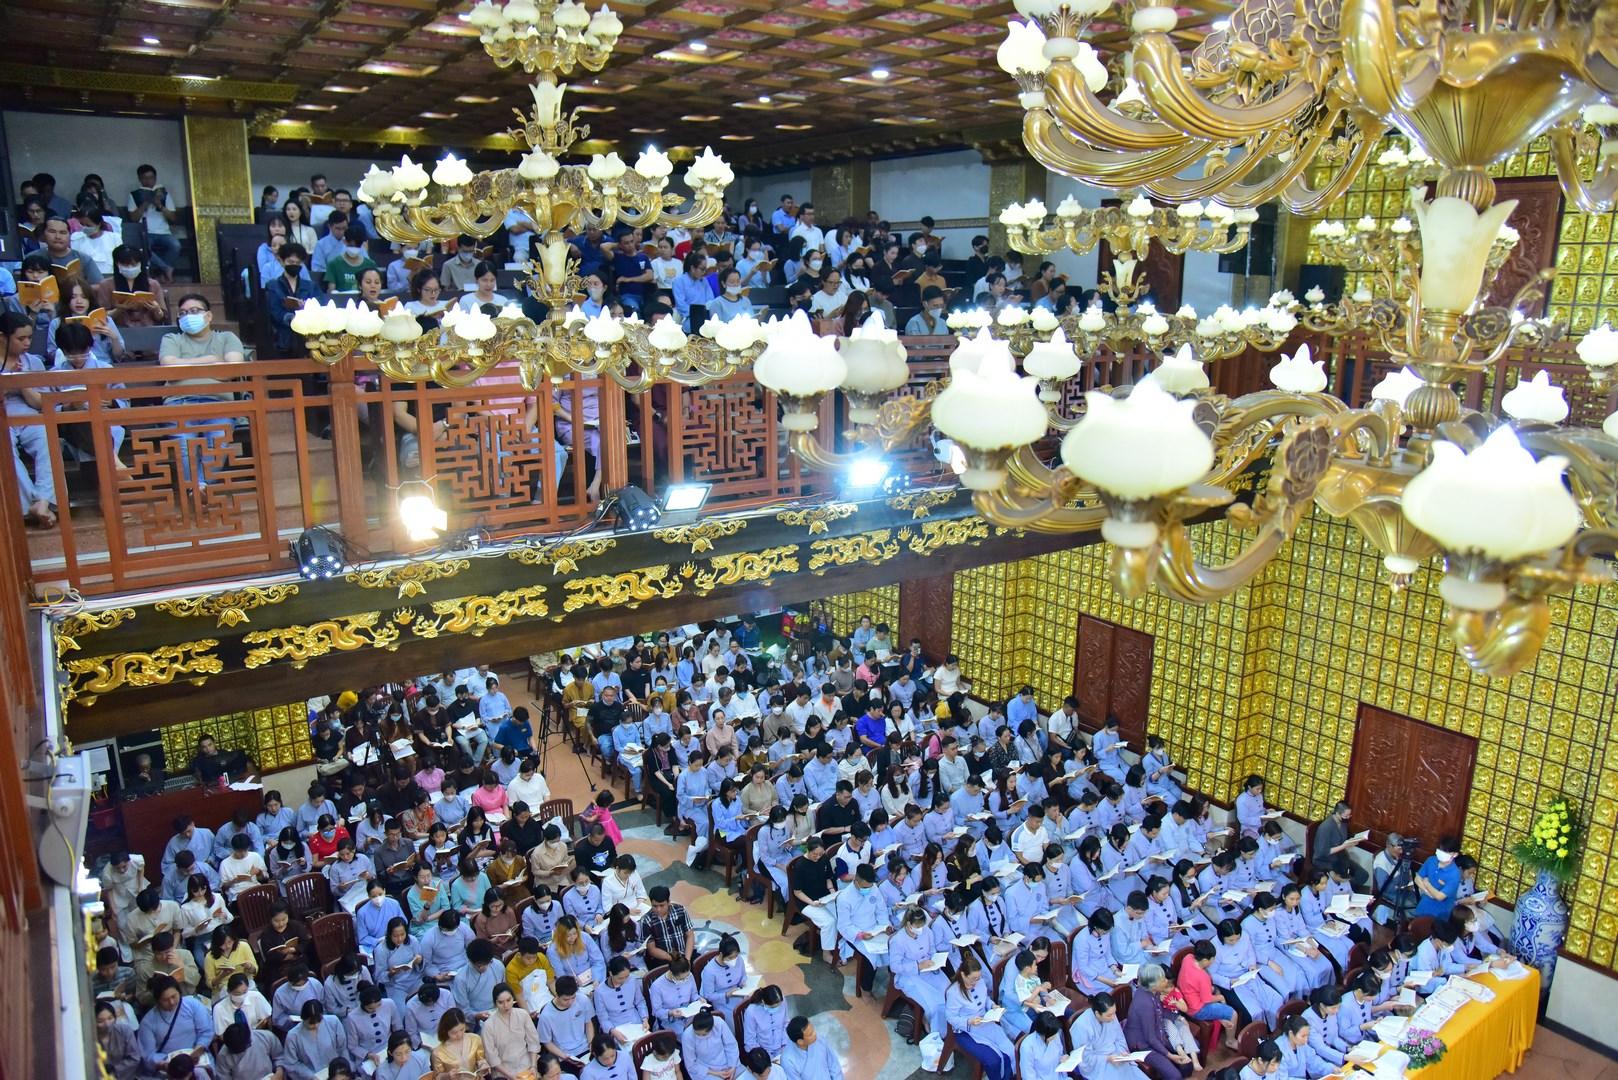 Gần 740 thiện nam tín nữ được quy y Tam bảo tại chùa Giác Ngộ